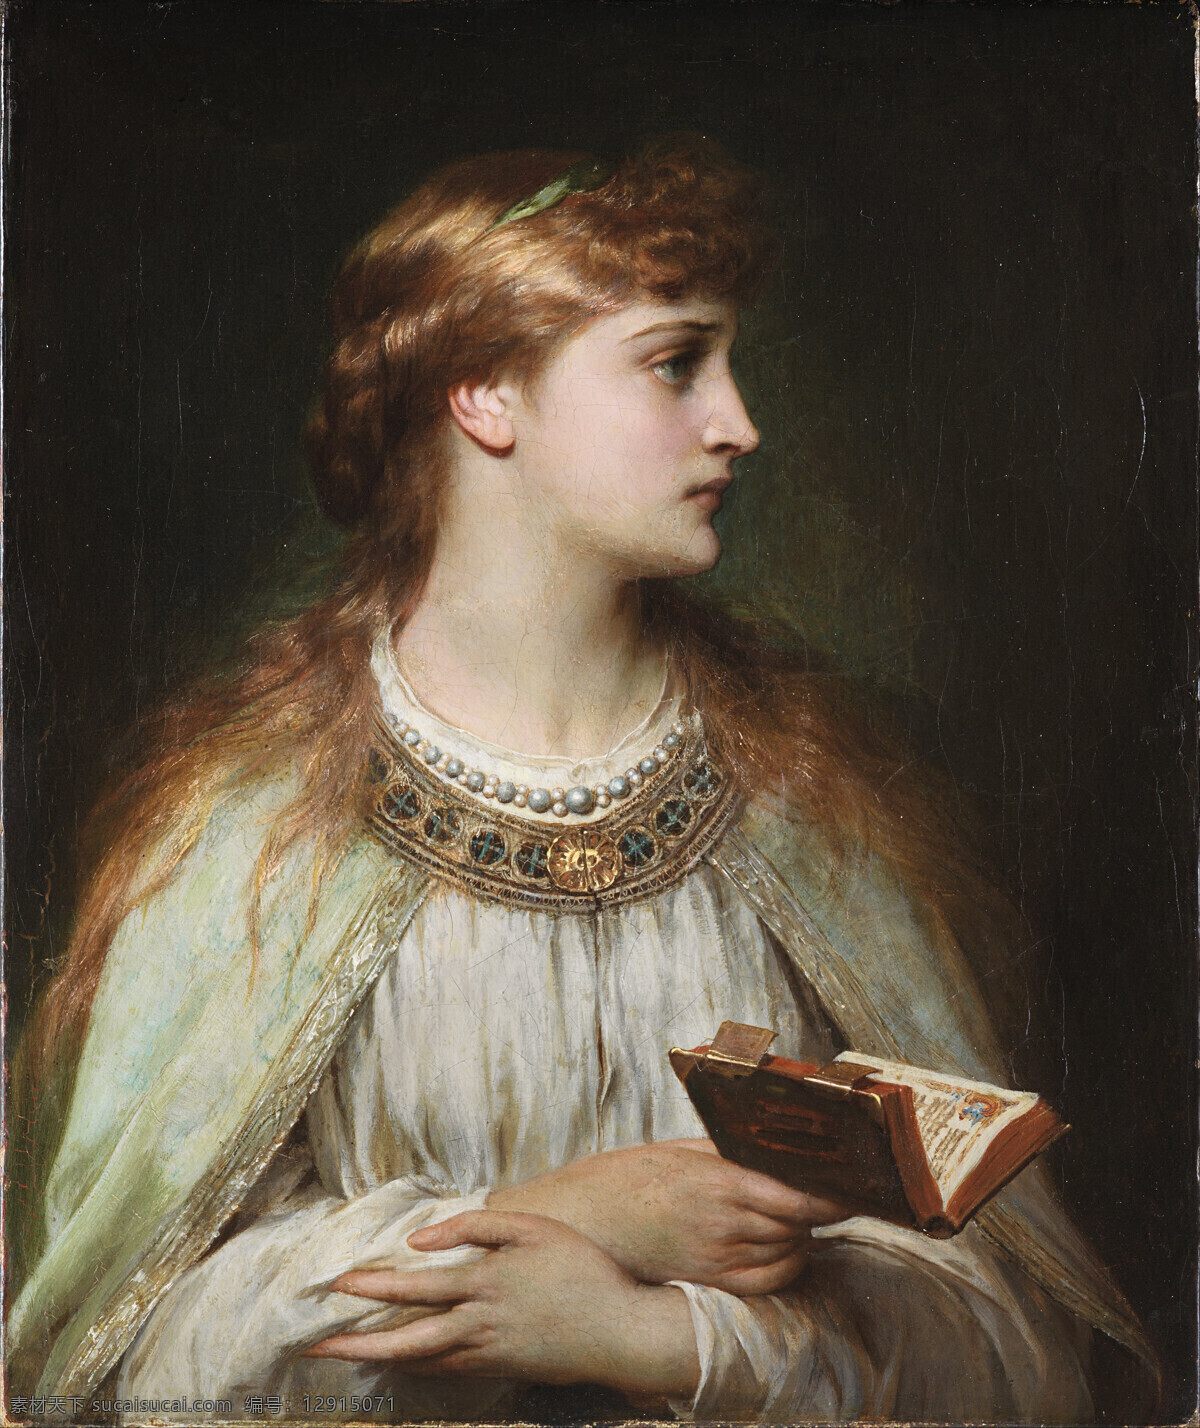 奥菲莉娅 托马斯 弗兰 西斯 迪克西 作品 莎士比亚剧作 哈姆雷特 女主人公 希腊语 油画 绘画书法 文化艺术